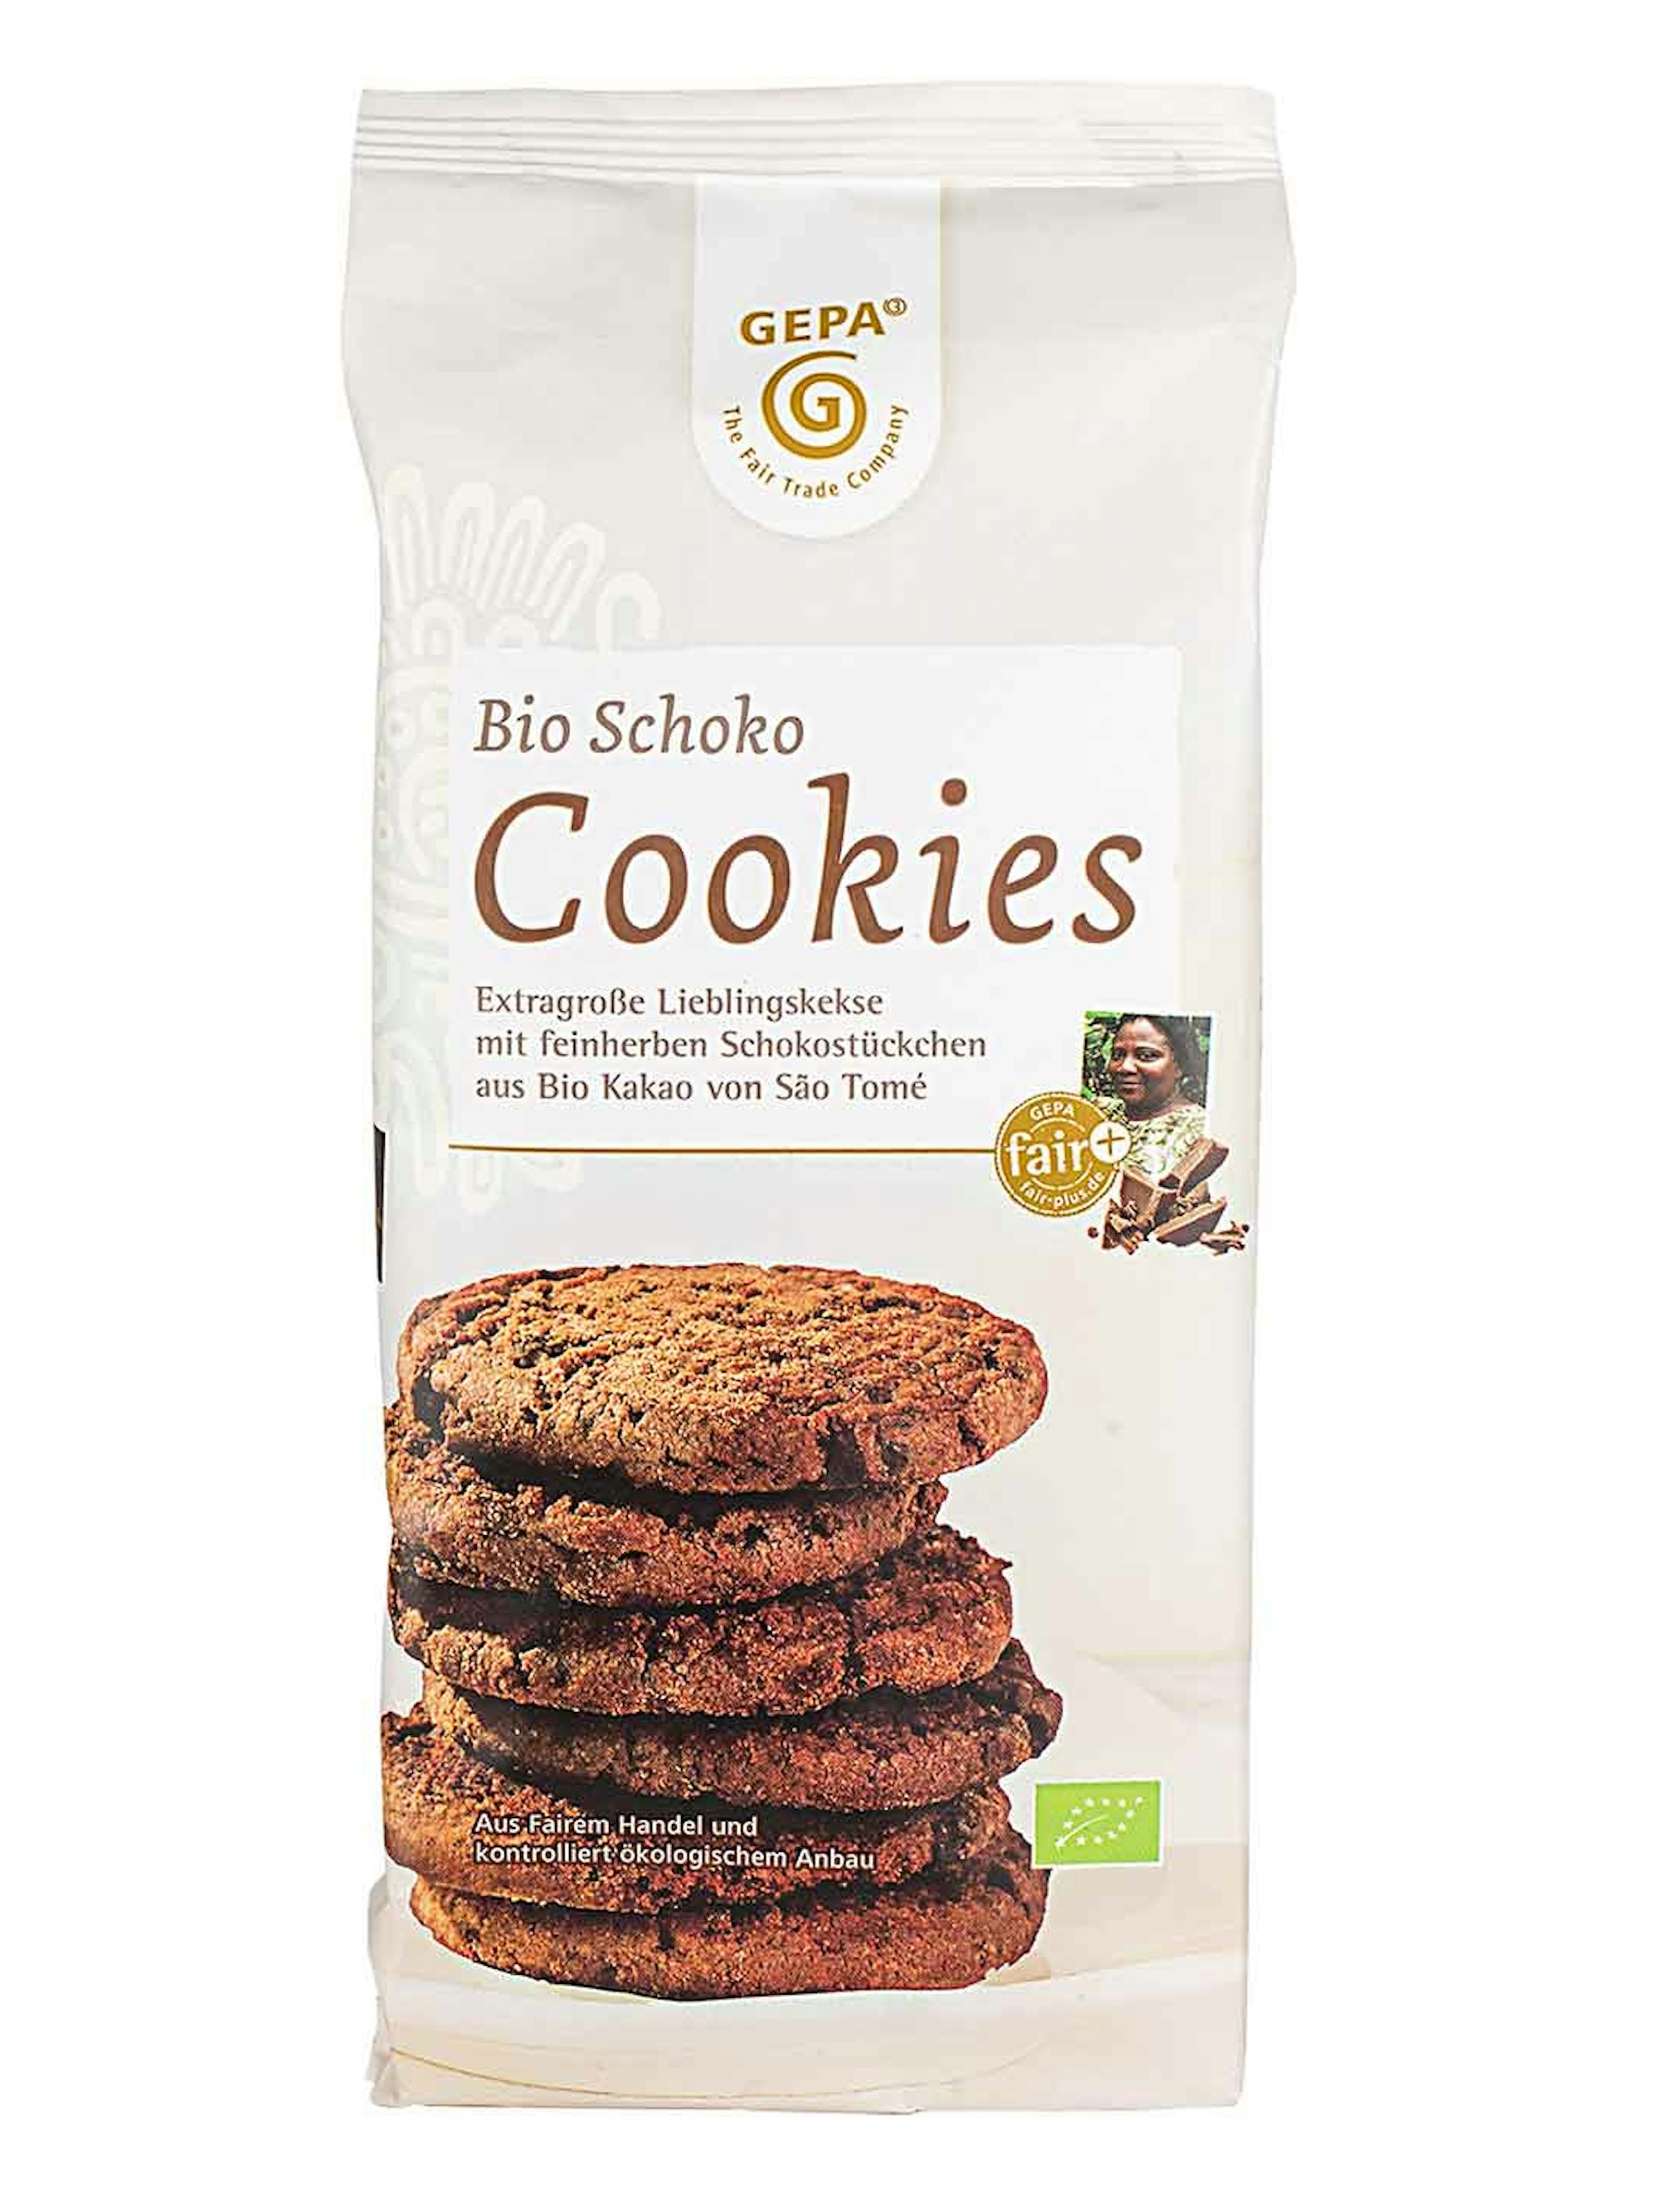 Die Schoko-Cookies einer Charge von Gepa werden zurückgerufen.